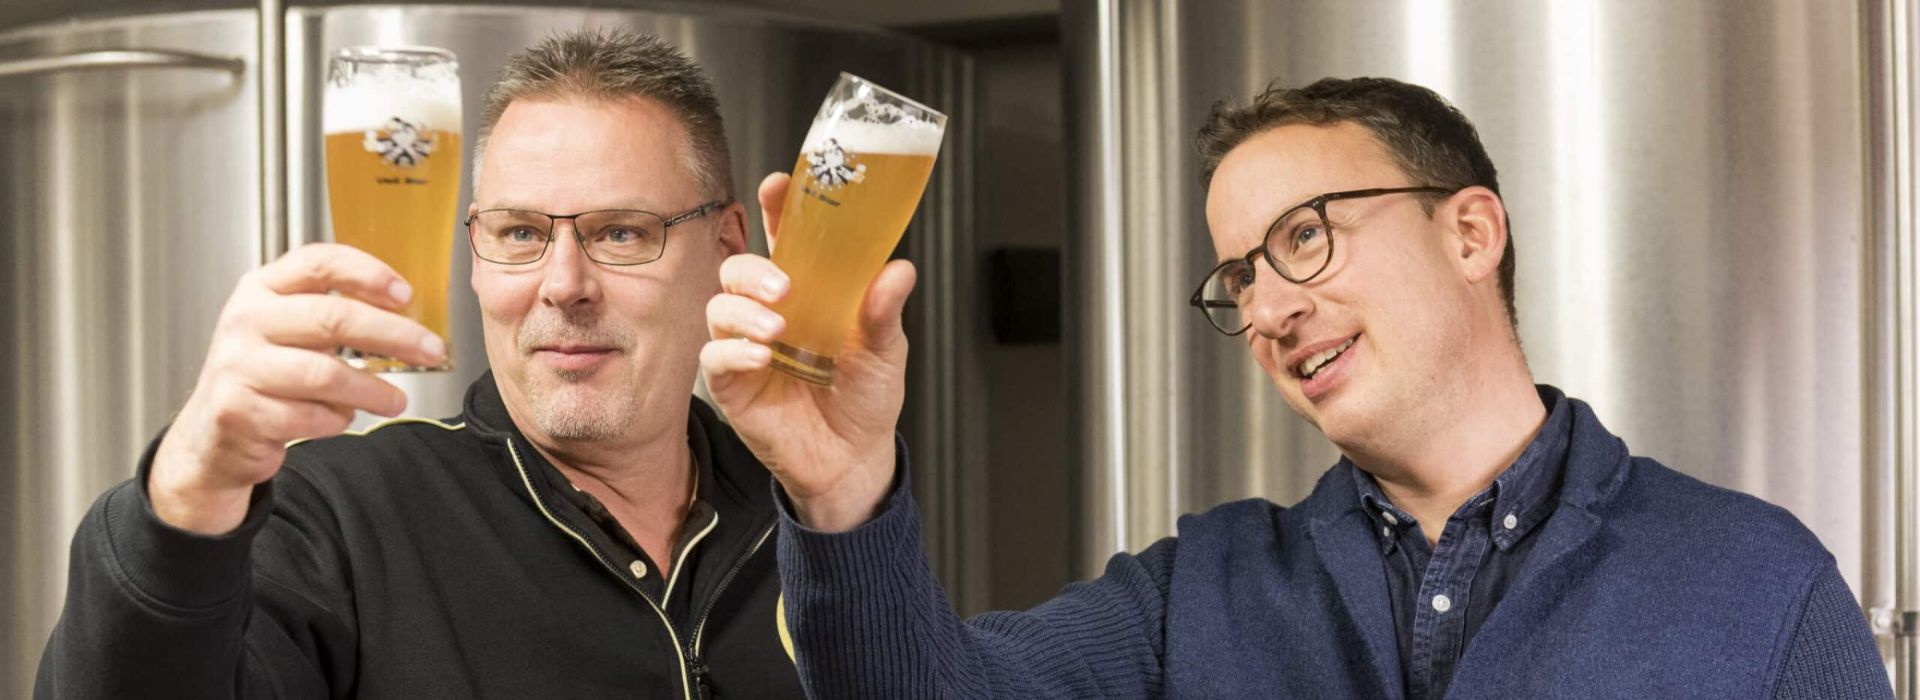 Uelibier - Brauerei Fischerstube – Wir verbinden Handwerk mit Leidenschaft.